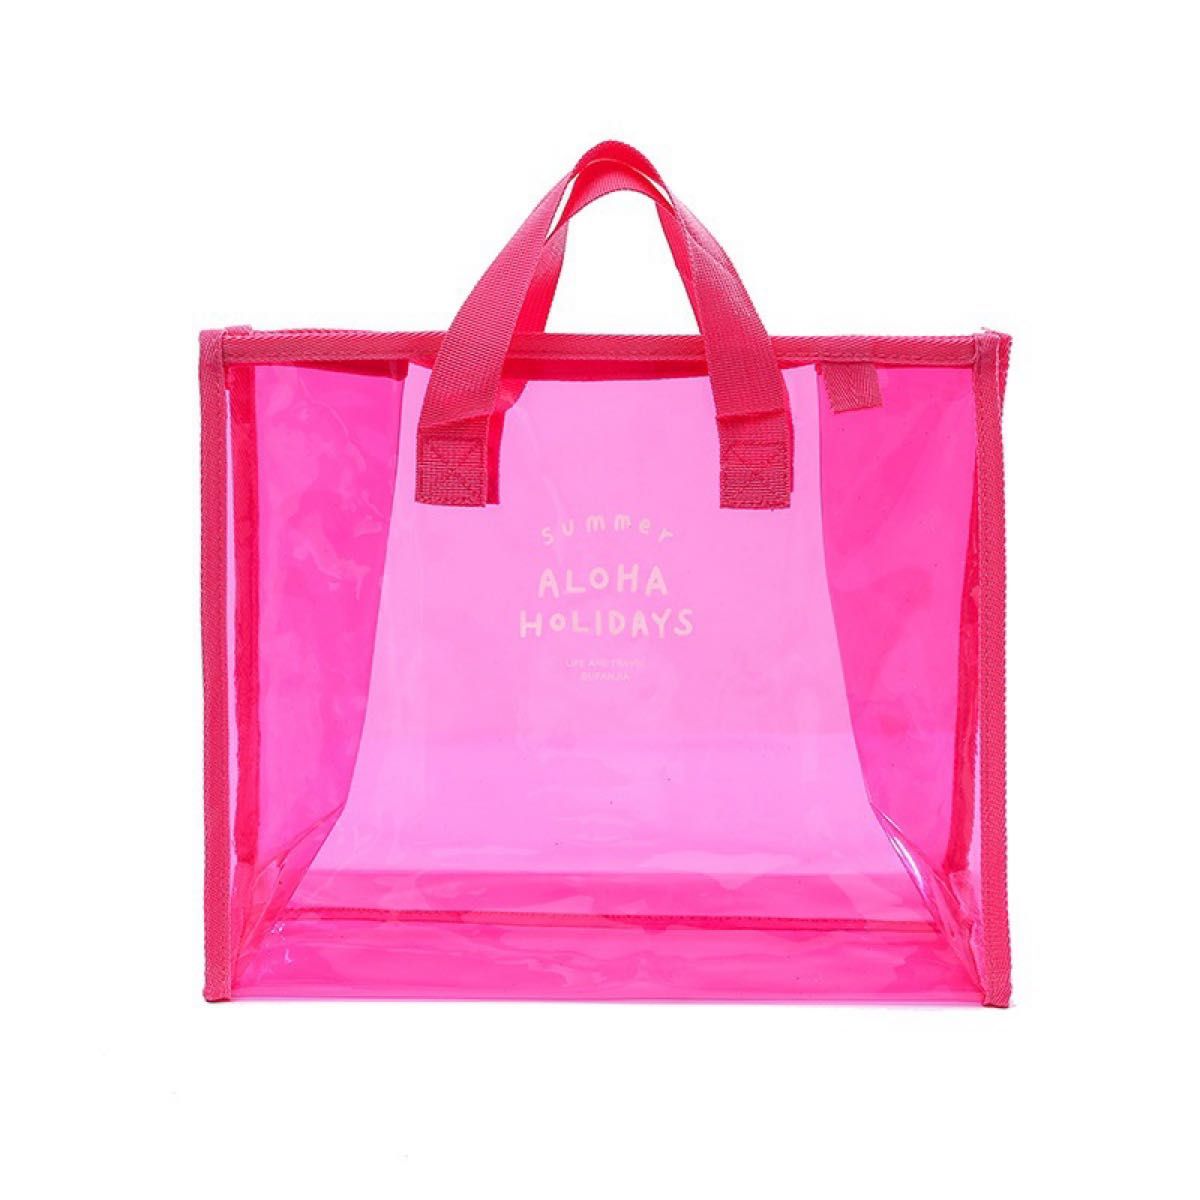 ビニールバッグ 透明 色付き 大容量 ピンク プールバッグ トートバッグ 可愛い プール 海 夏 クリア カラフル オシャレ